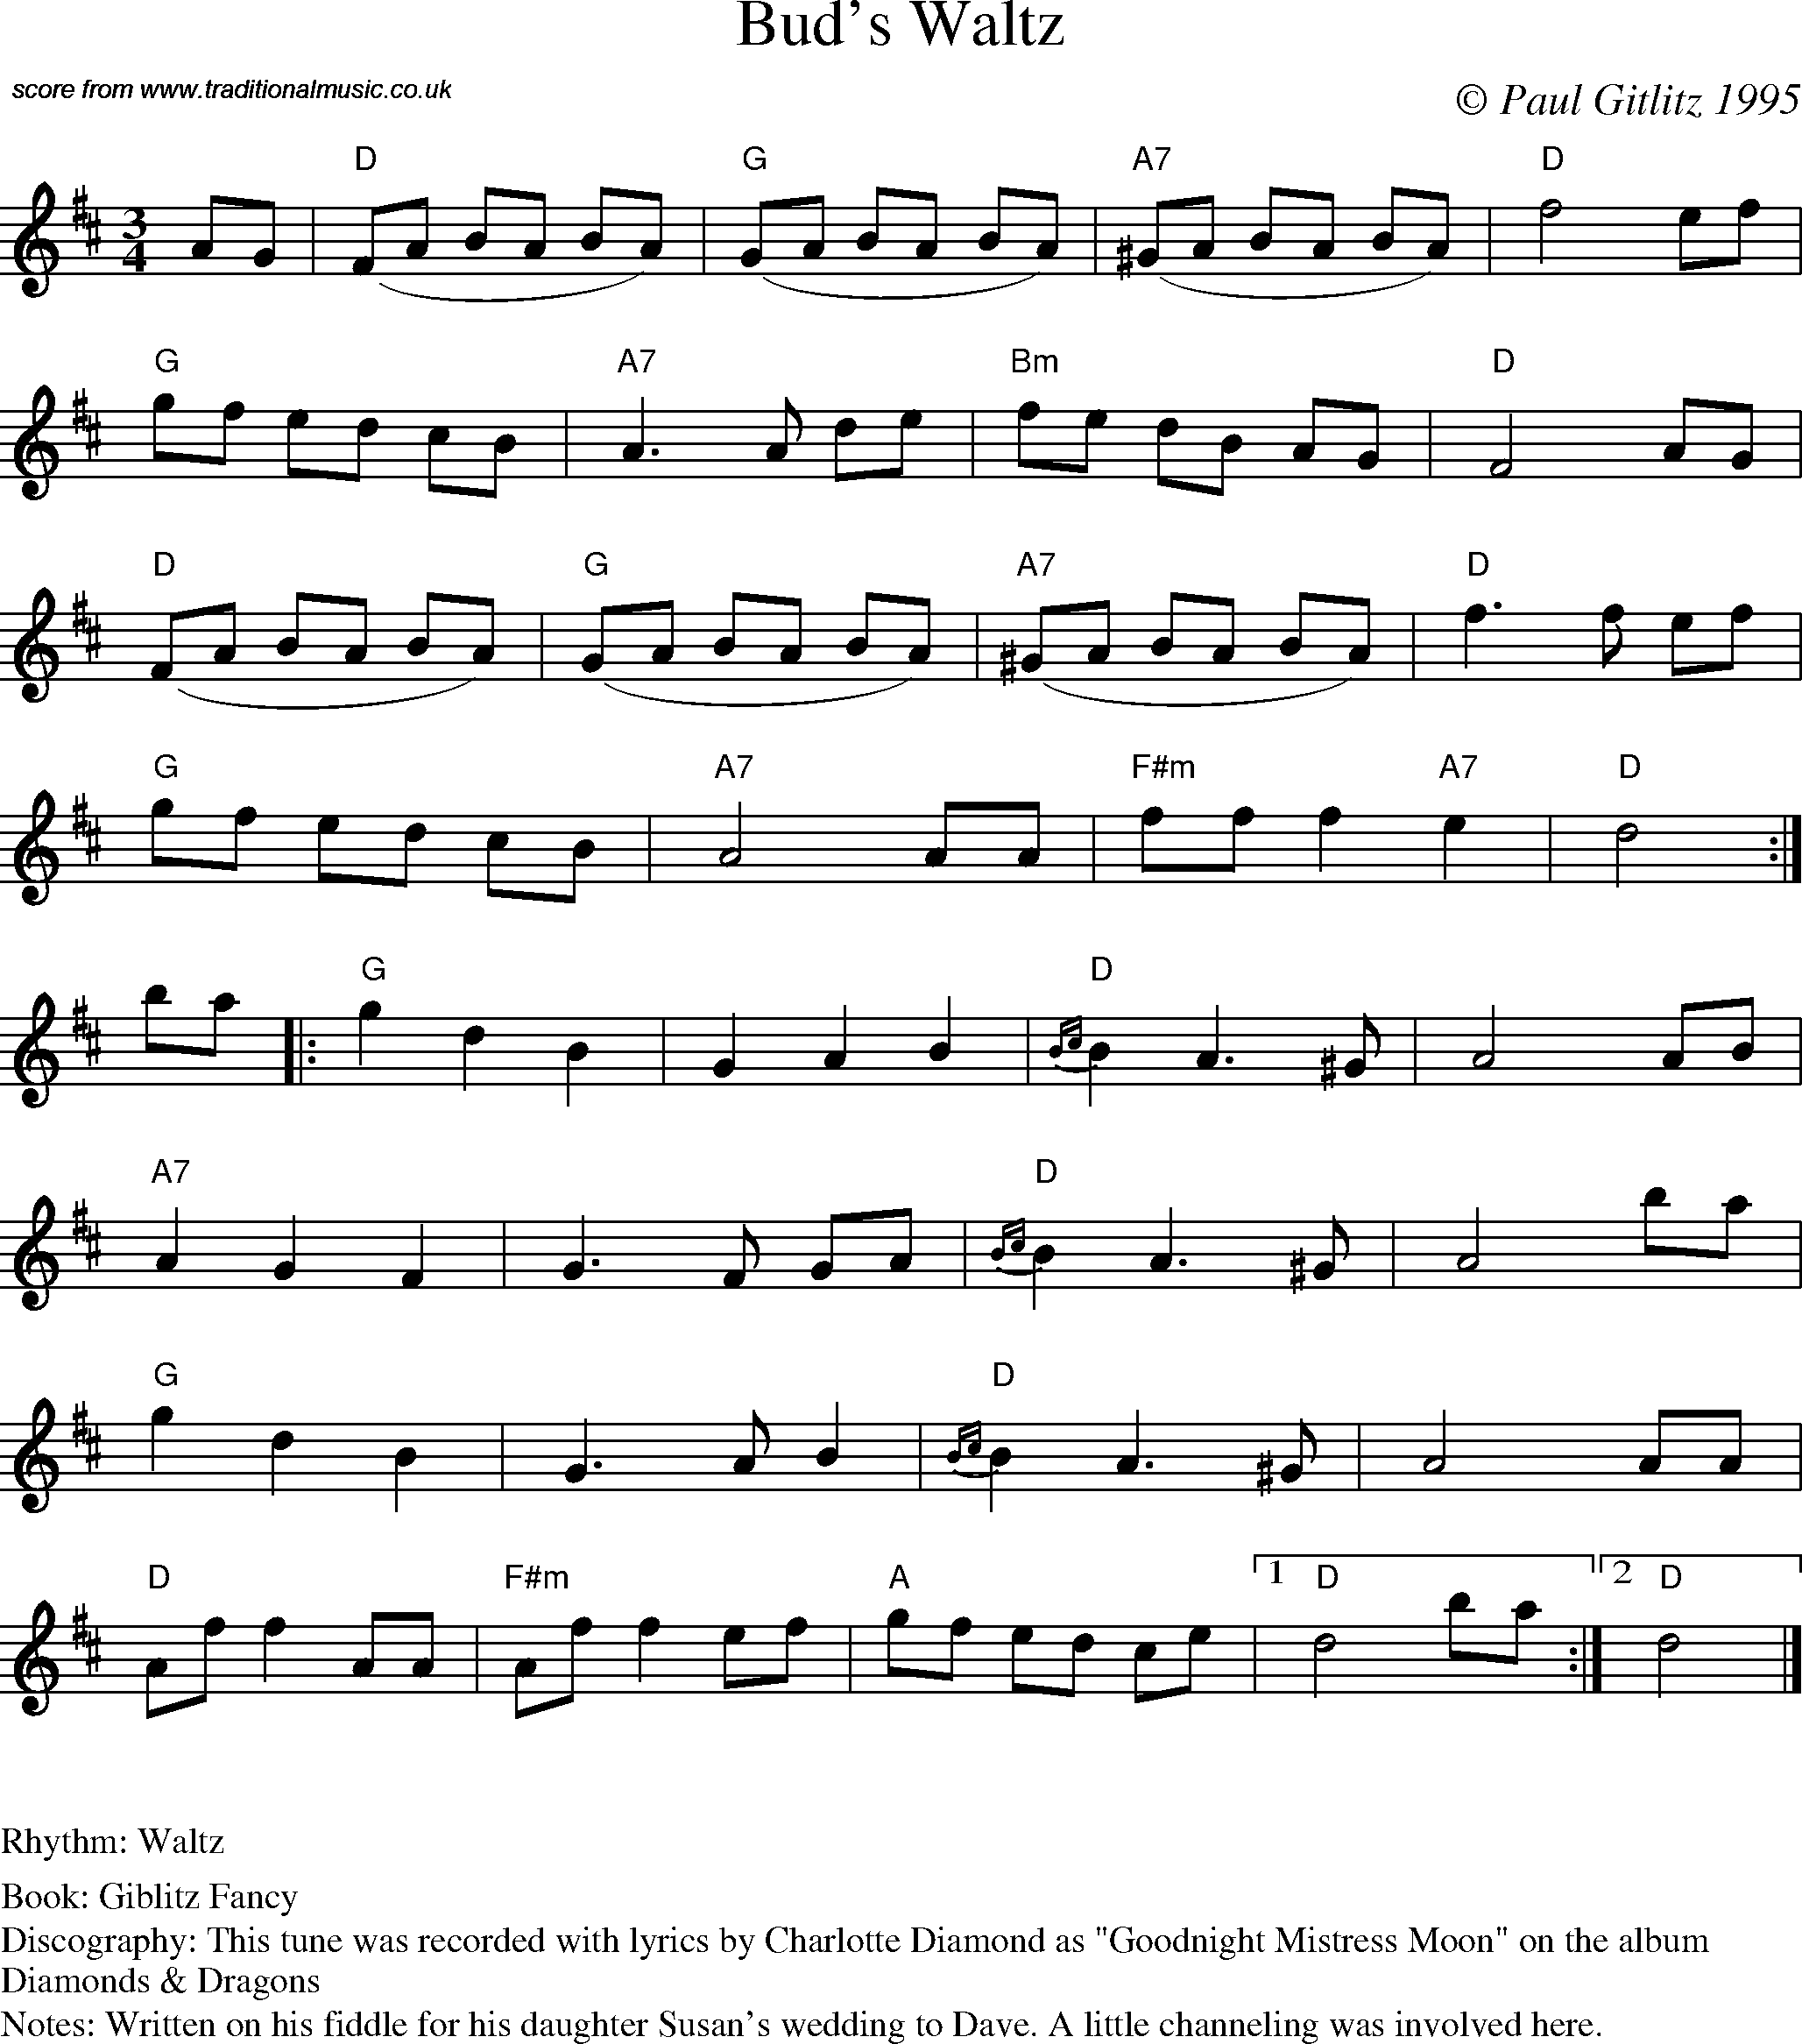 Sheet Music Score for Waltz - Bud's Waltz